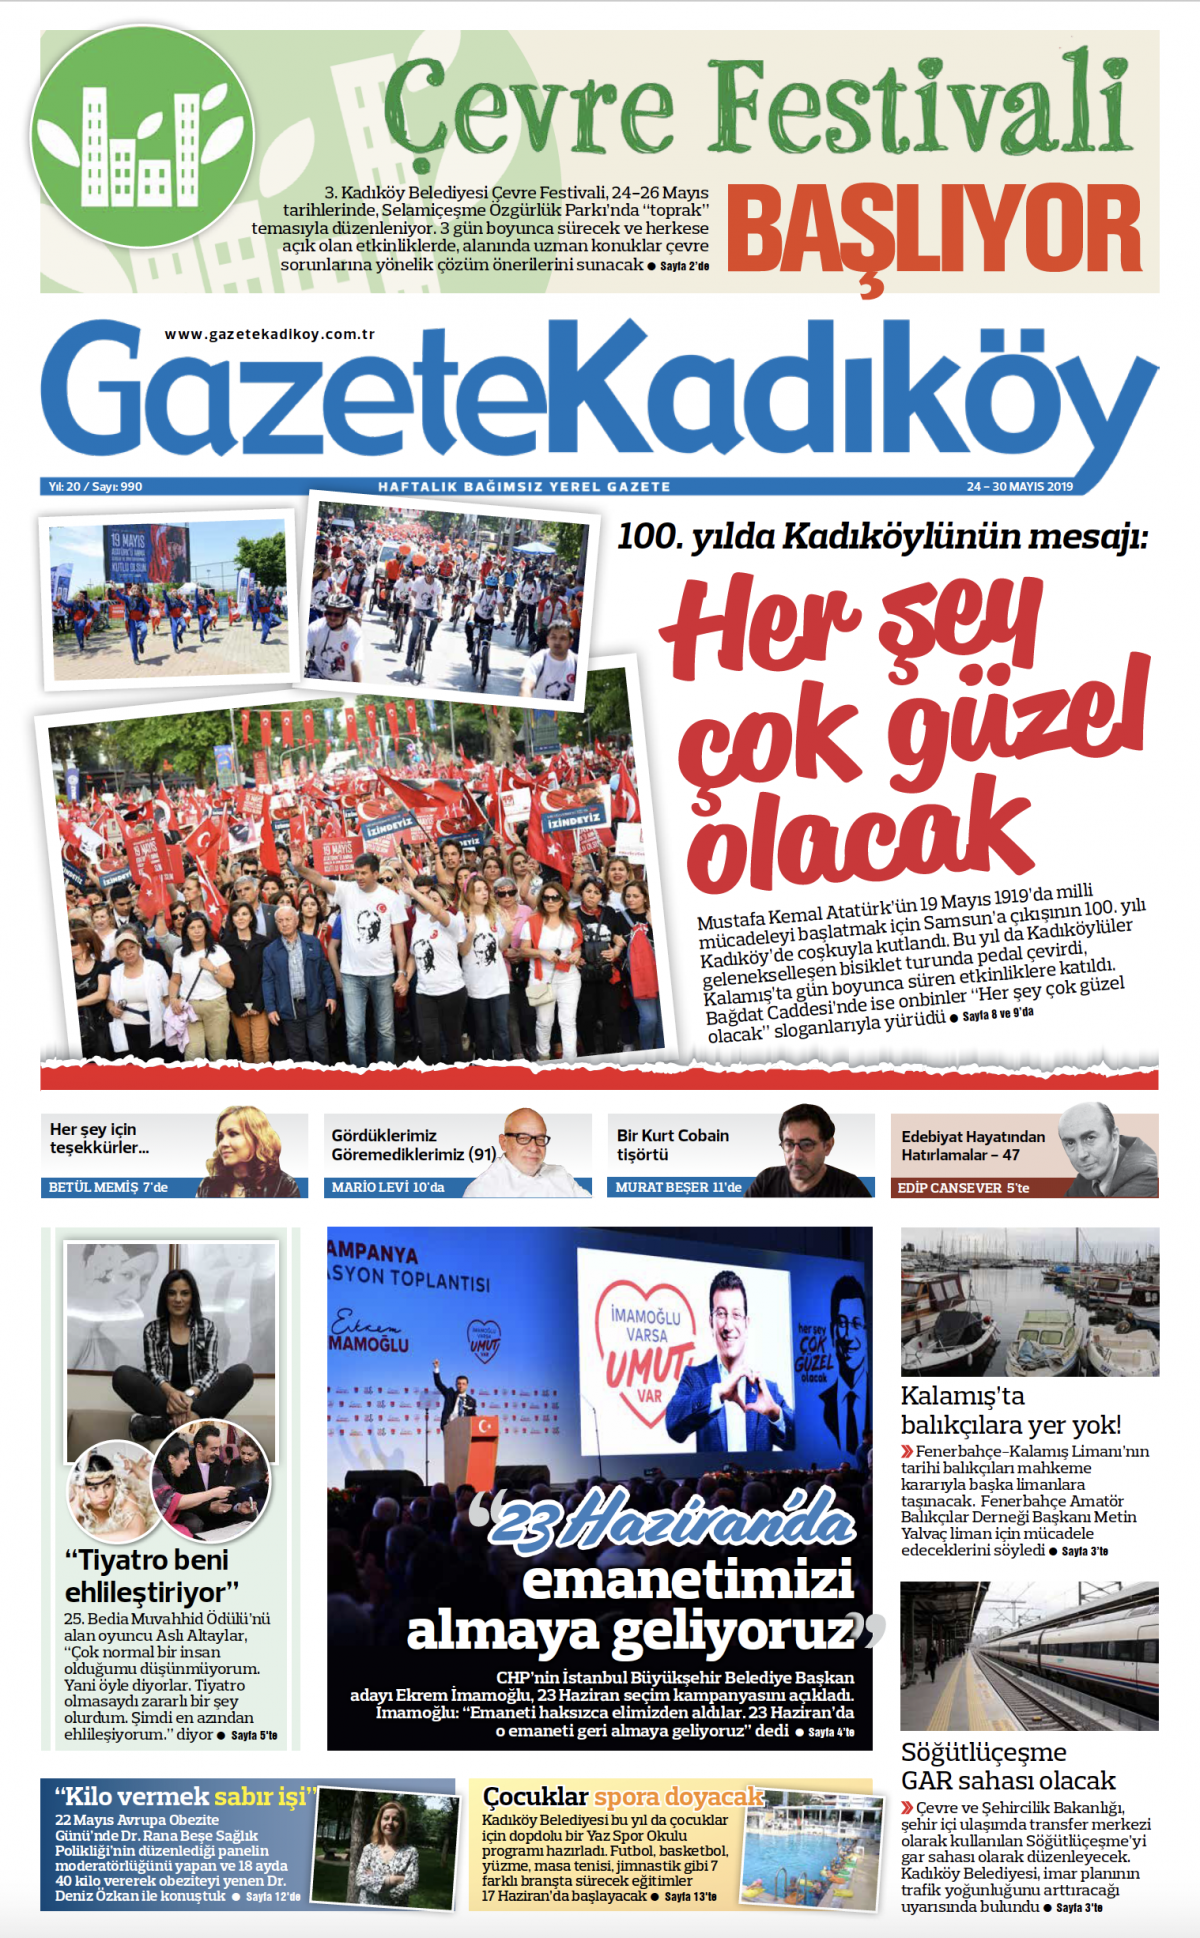 Gazete Kadıköy - 990. Sayı